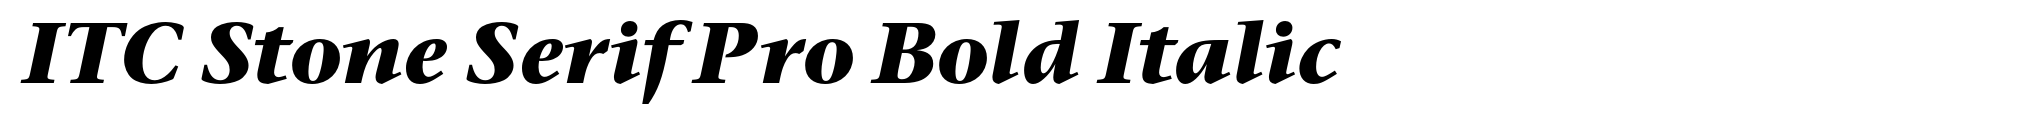 ITC Stone Serif Pro Bold Italic image